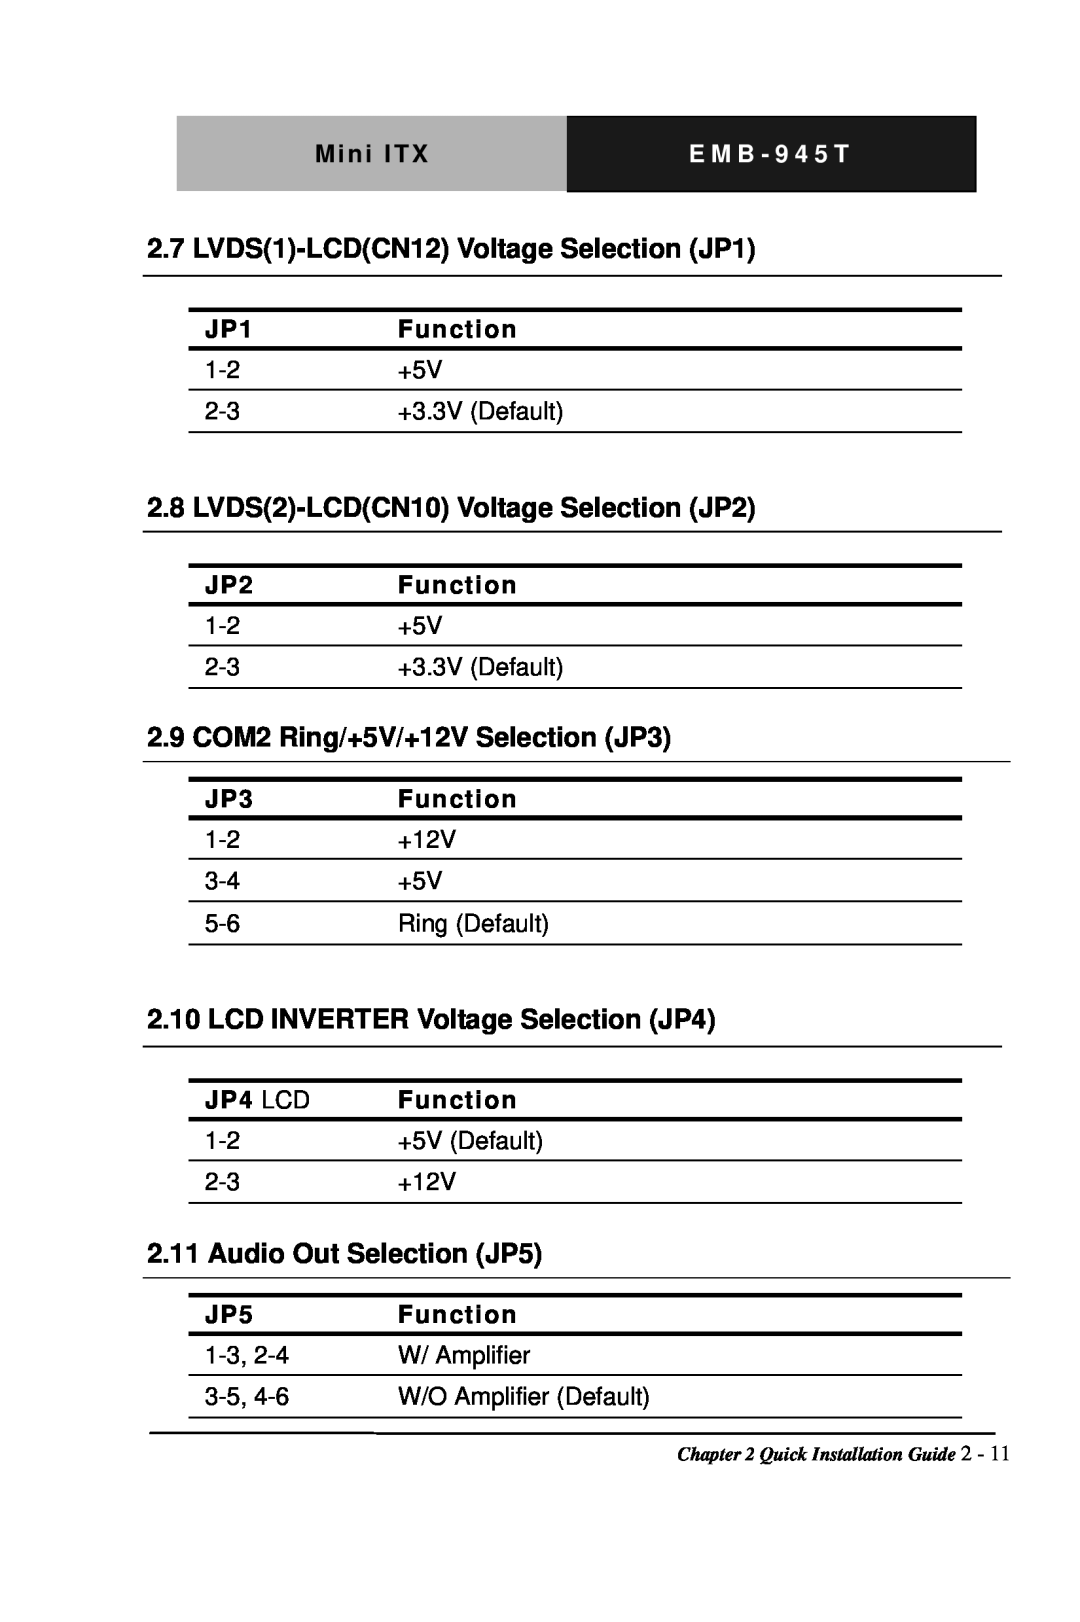 Intel EMB-945T LVDS1-LCDCN12Voltage Selection JP1, LVDS2-LCDCN10Voltage Selection JP2, LCD INVERTER Voltage Selection JP4 